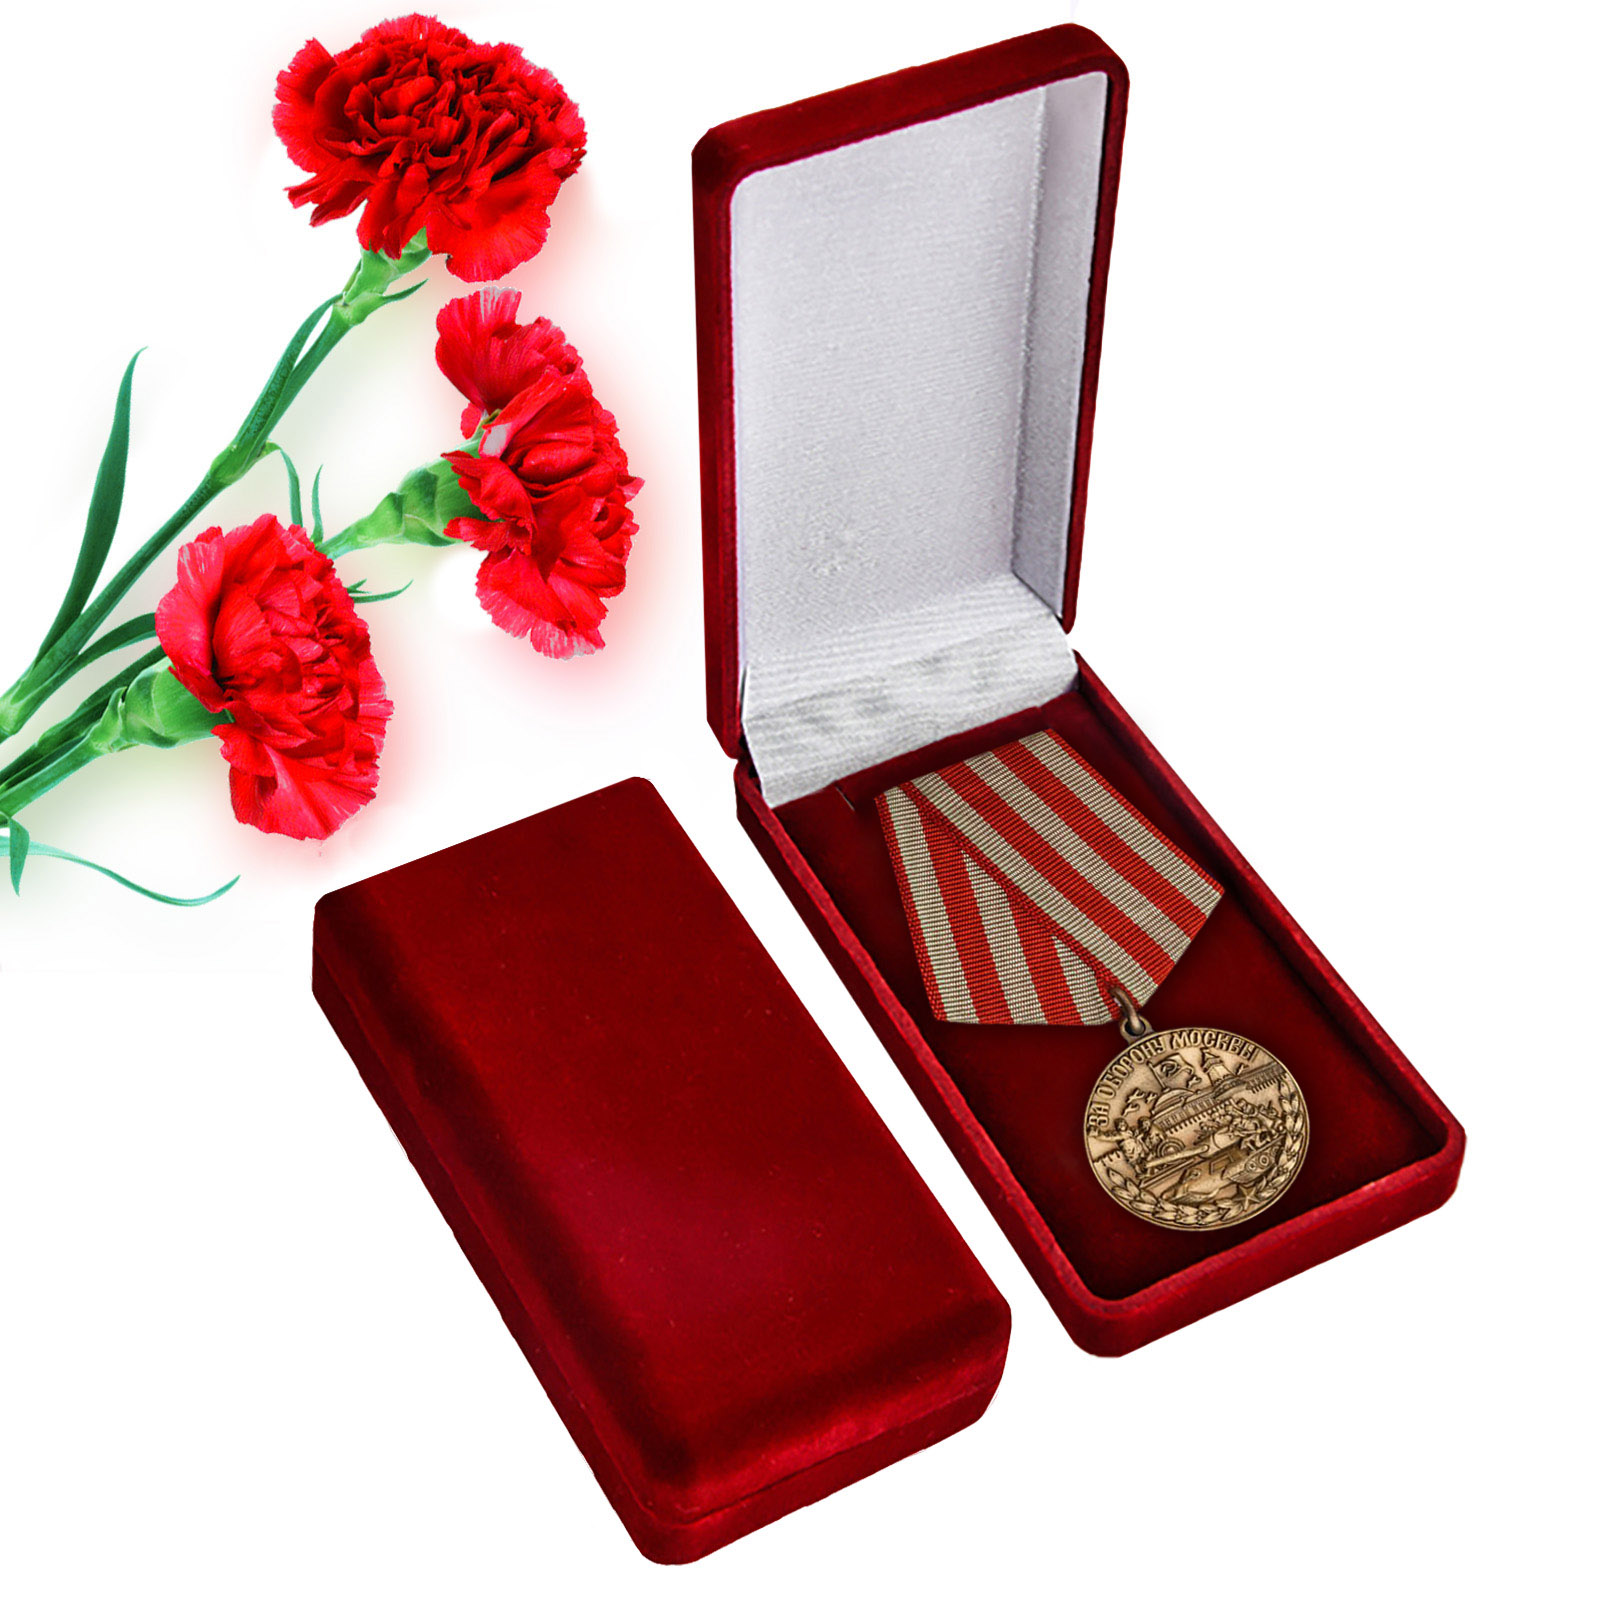 Купить муляж медали "За оборону Москвы" онлайн с доставкой